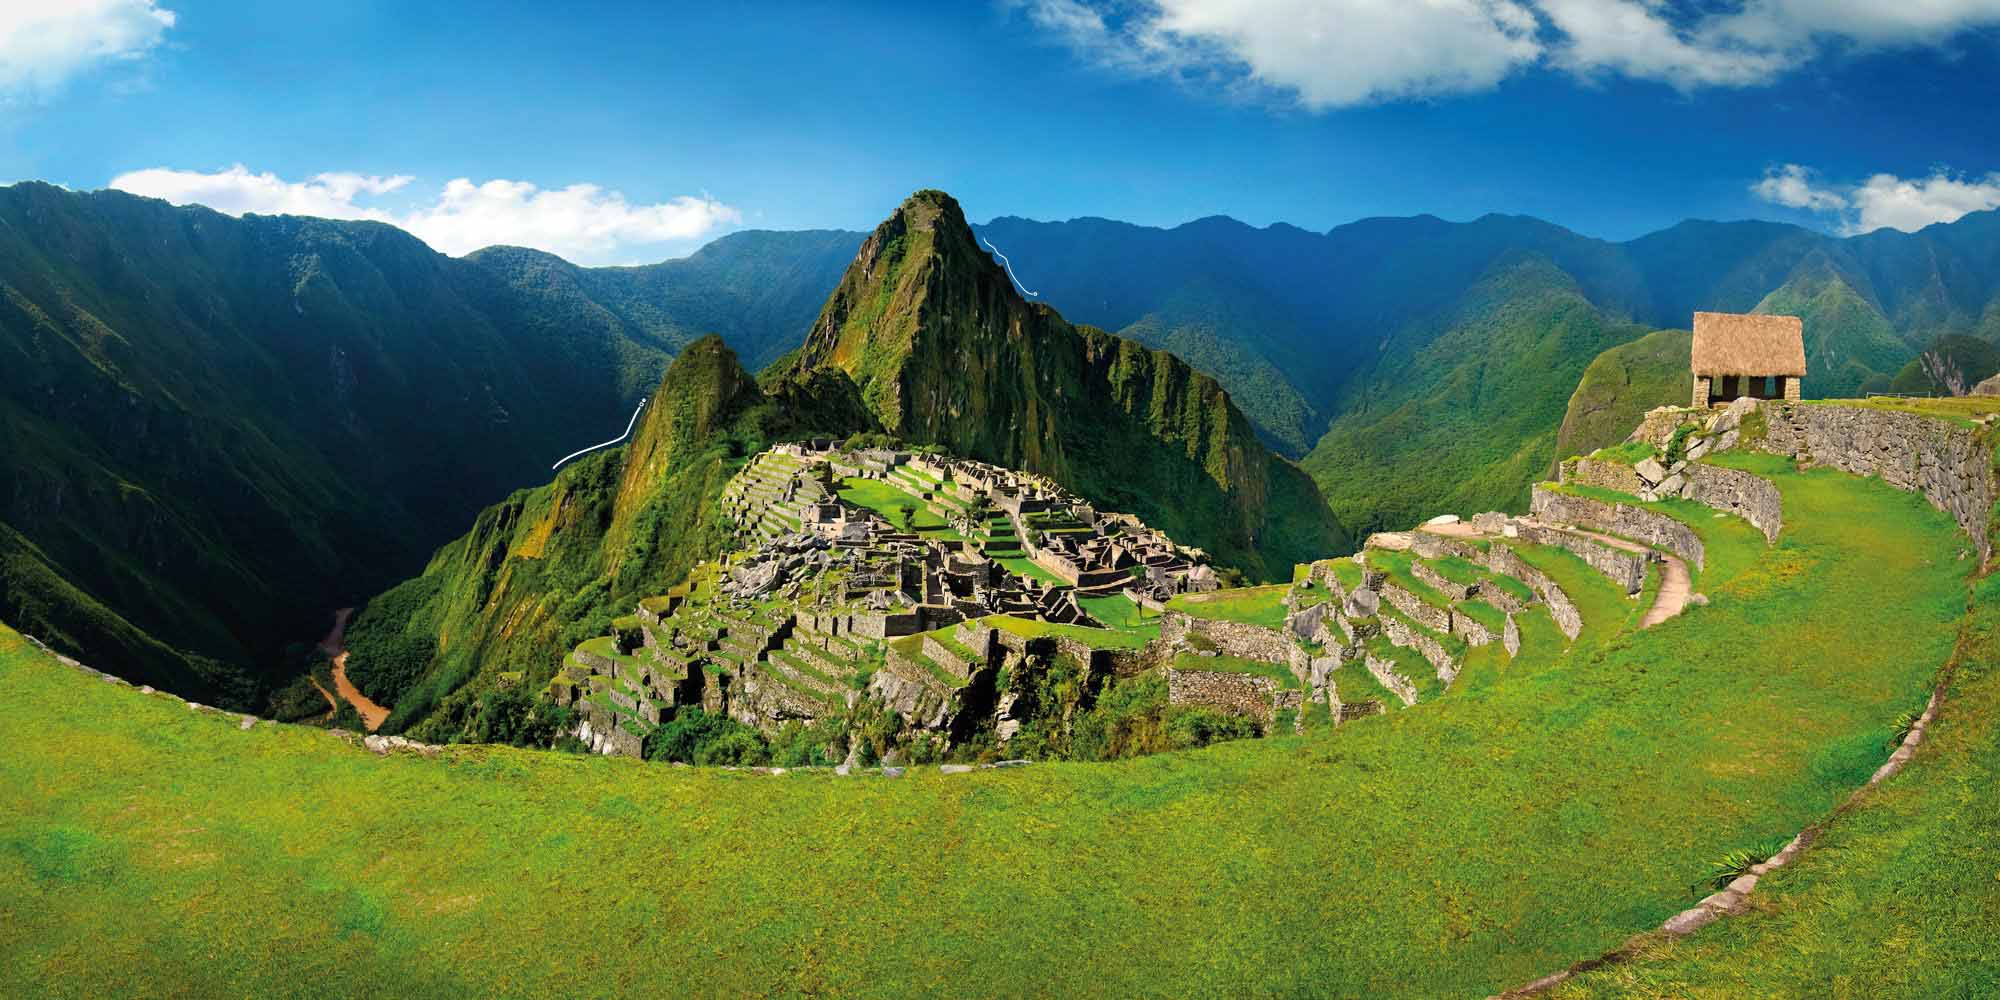 Explore Machu Picchu in Peru, following the ancient Inca trail